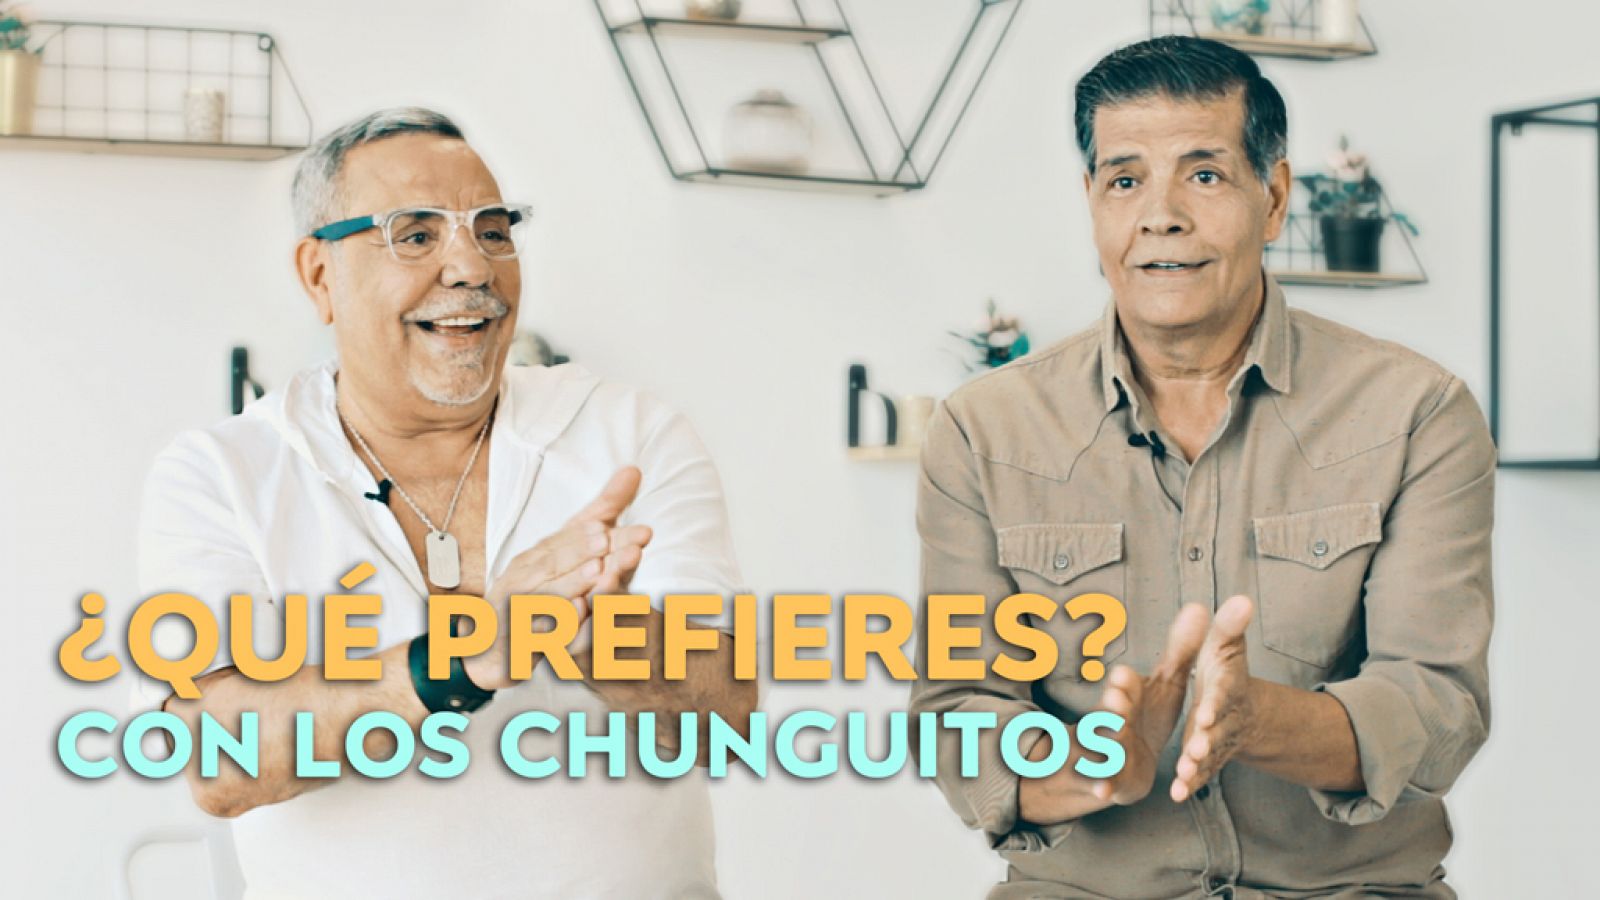 MasterChef Celebrity 4 - Los Chunguitos se confiesan jugando a "Qué prefieres"